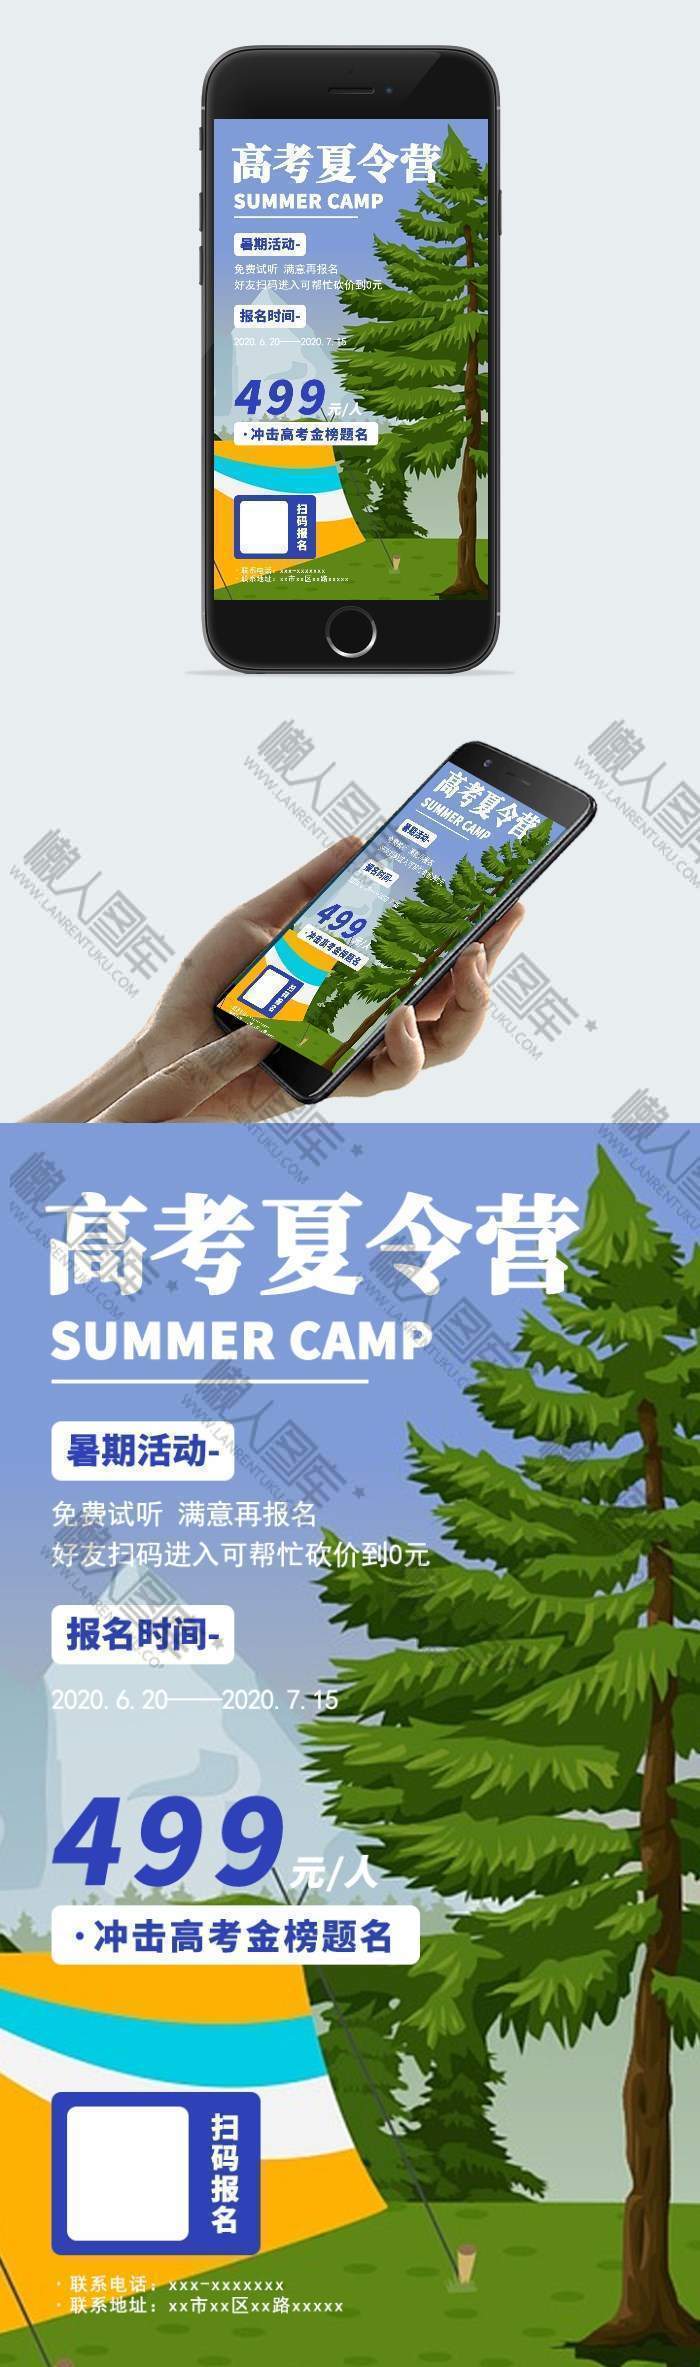 高考夏令营广告平面手机海报